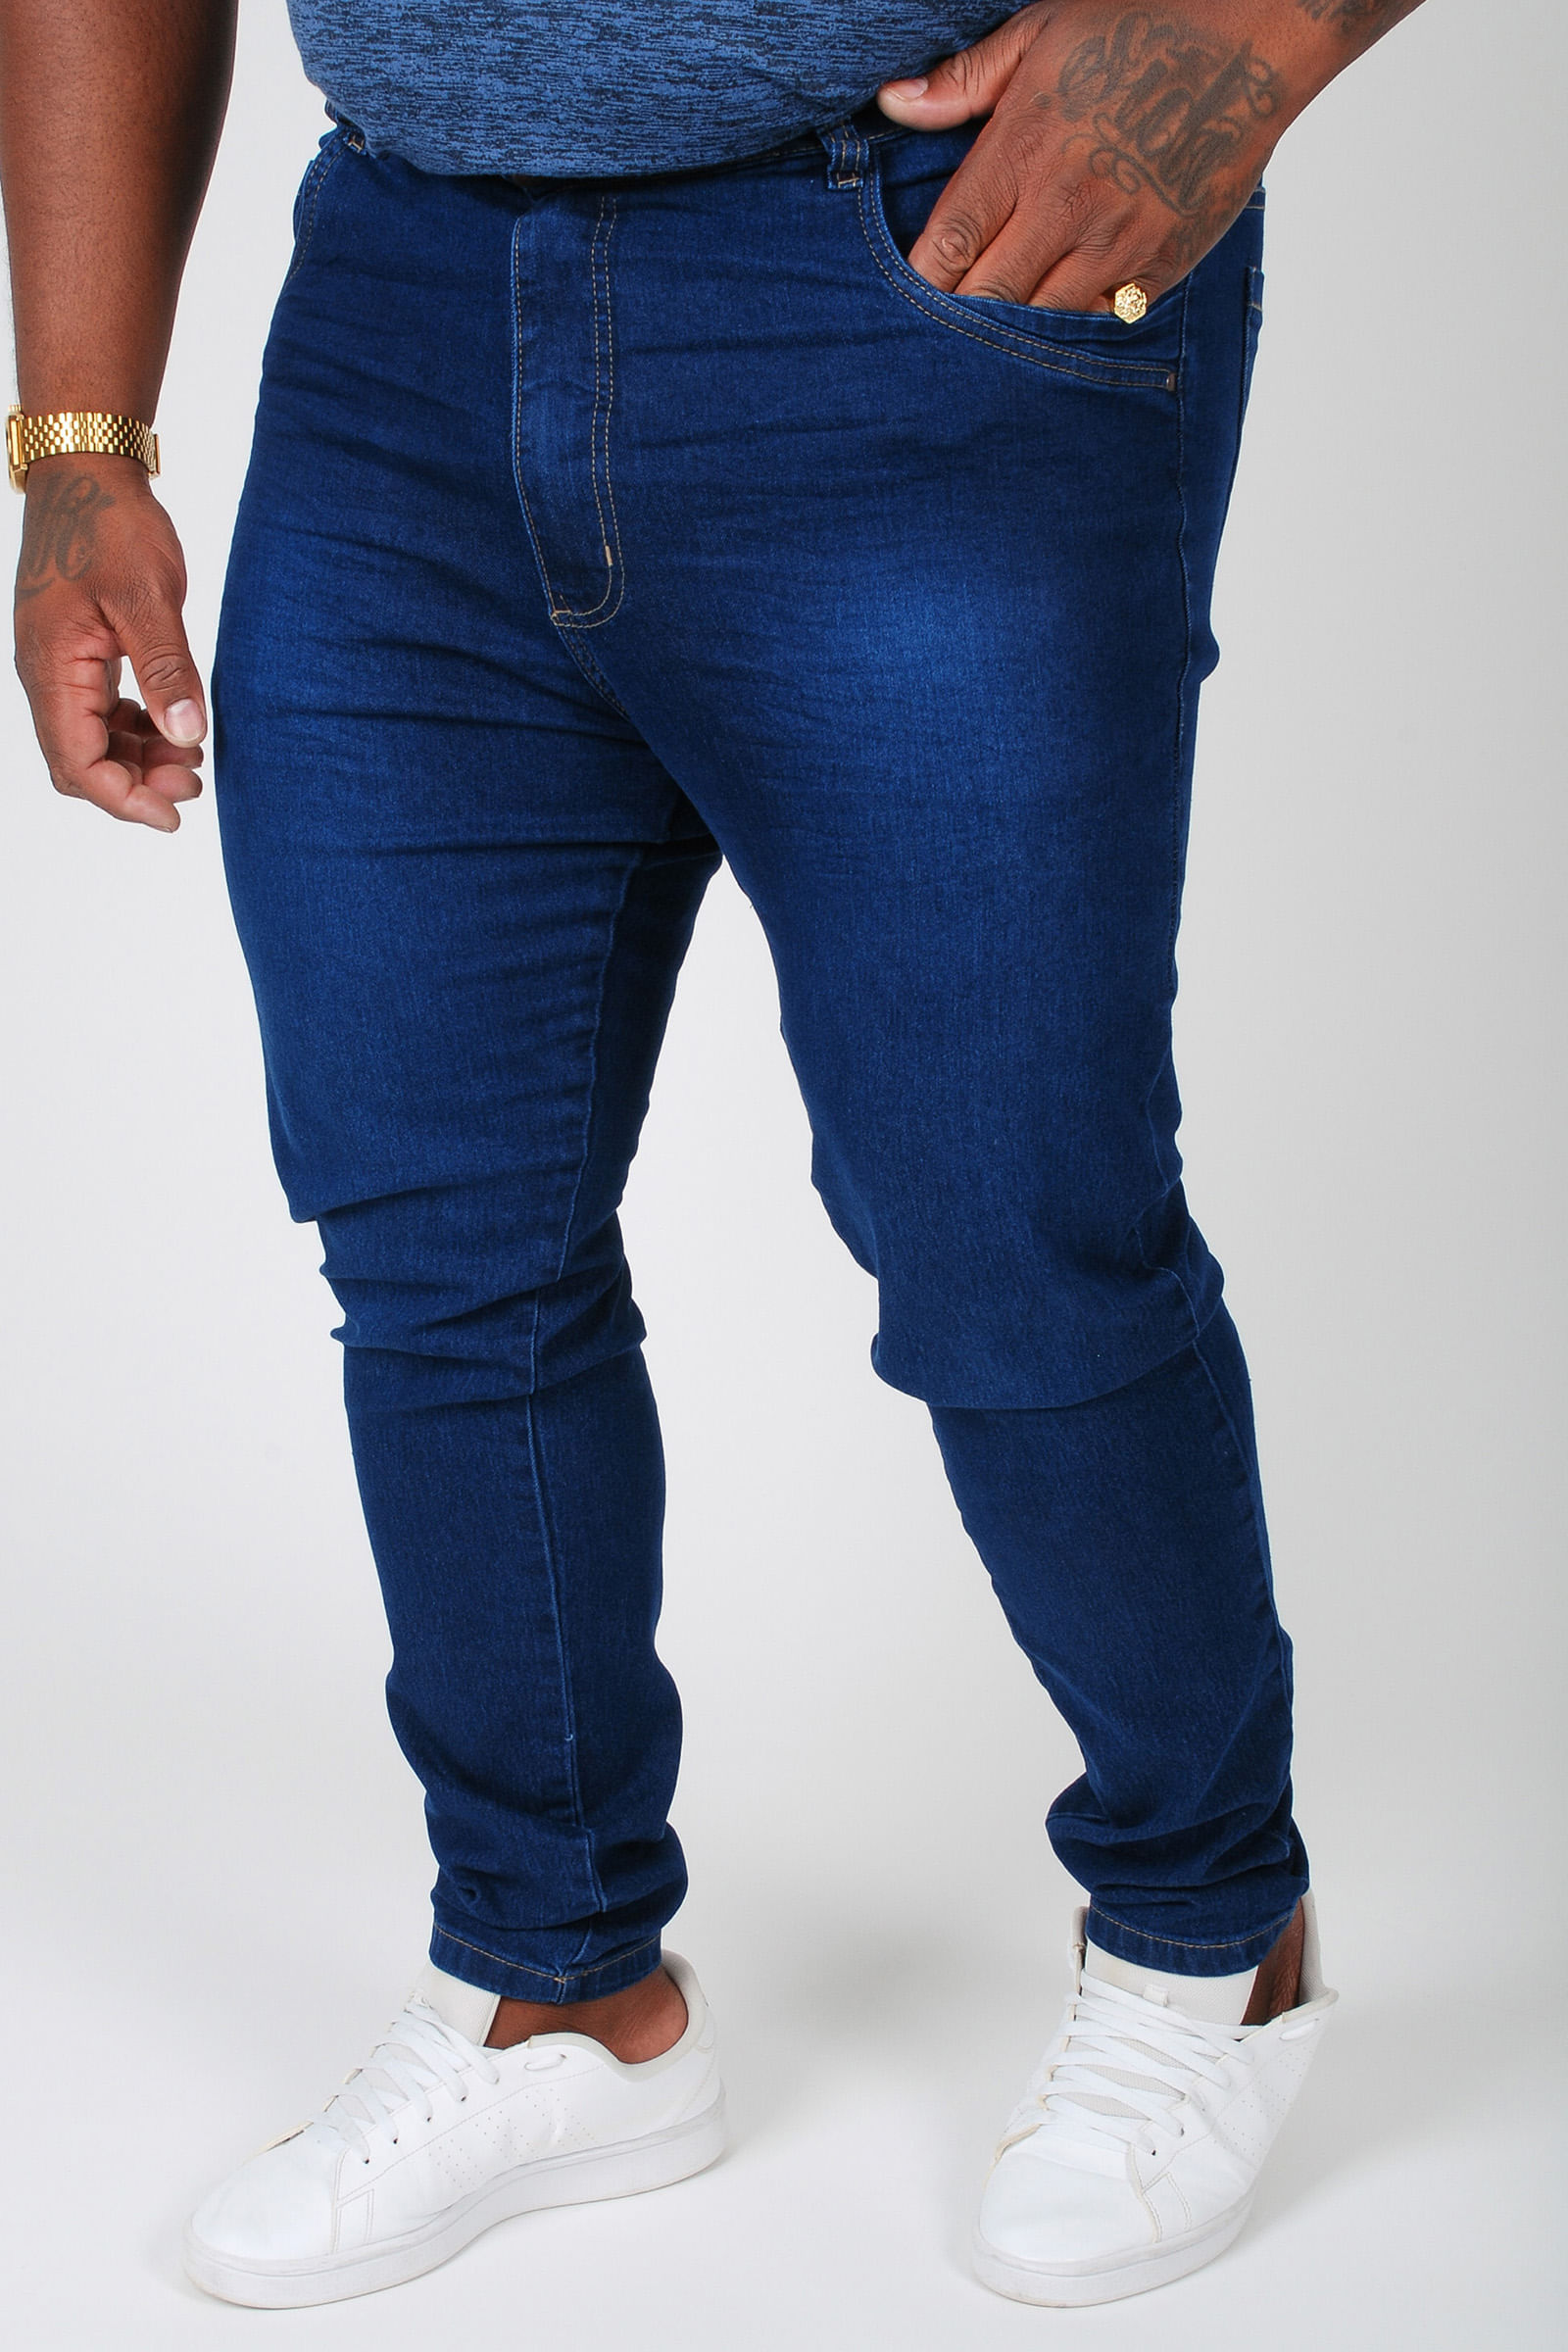 Calça jeans skinny masculina plus size jeans blue - Roupas Plus Size:  Blusas, Vestidos, Básicos e muito mais!